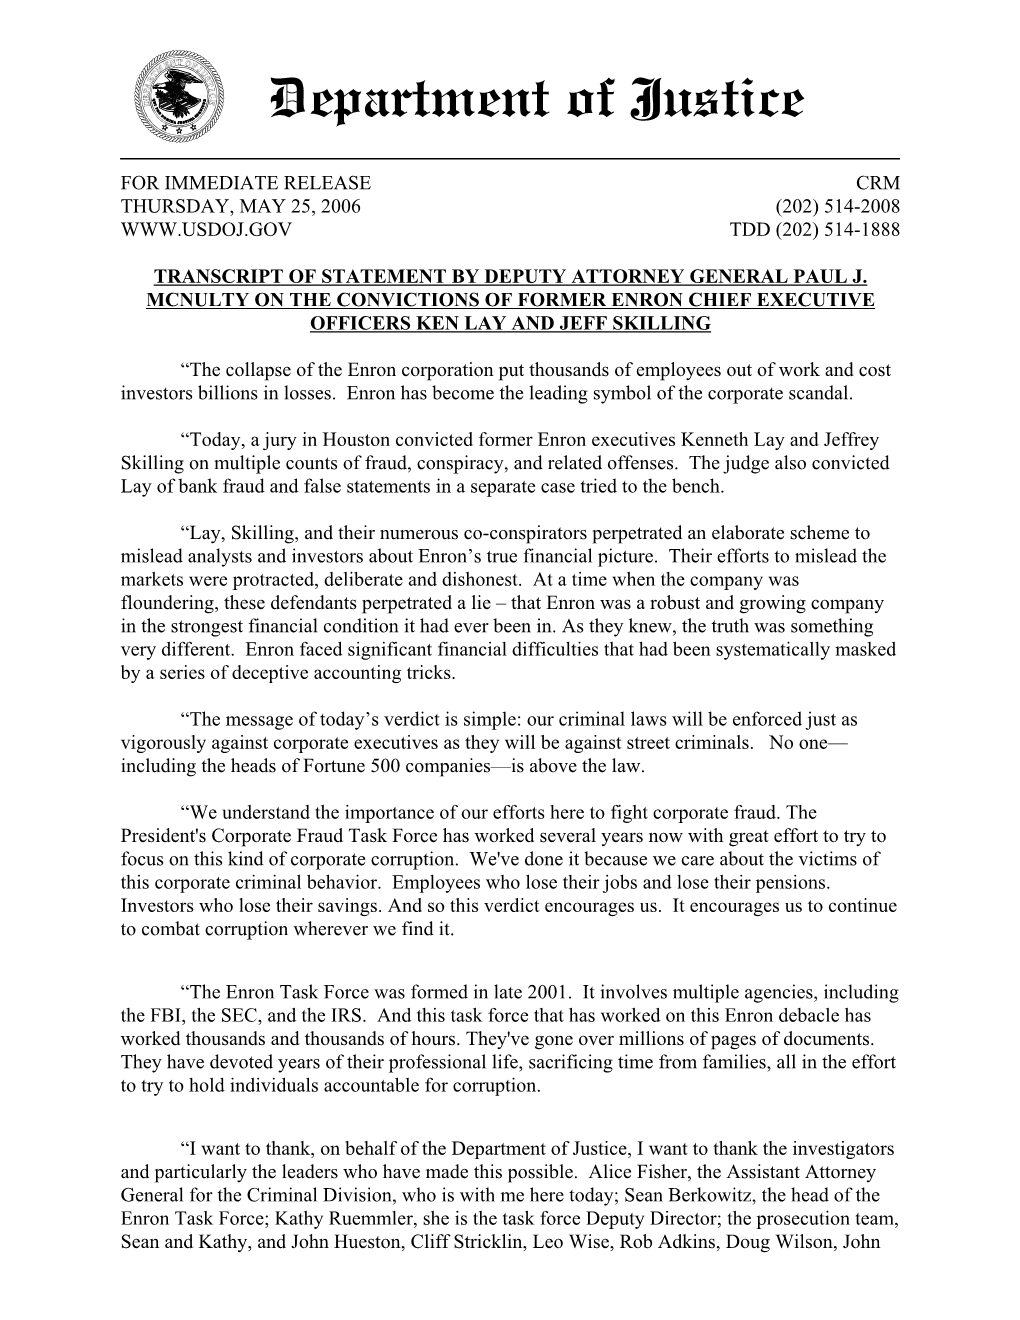 Transcript of Statement by Deputy Attorney General Paul J.Mcnulty On